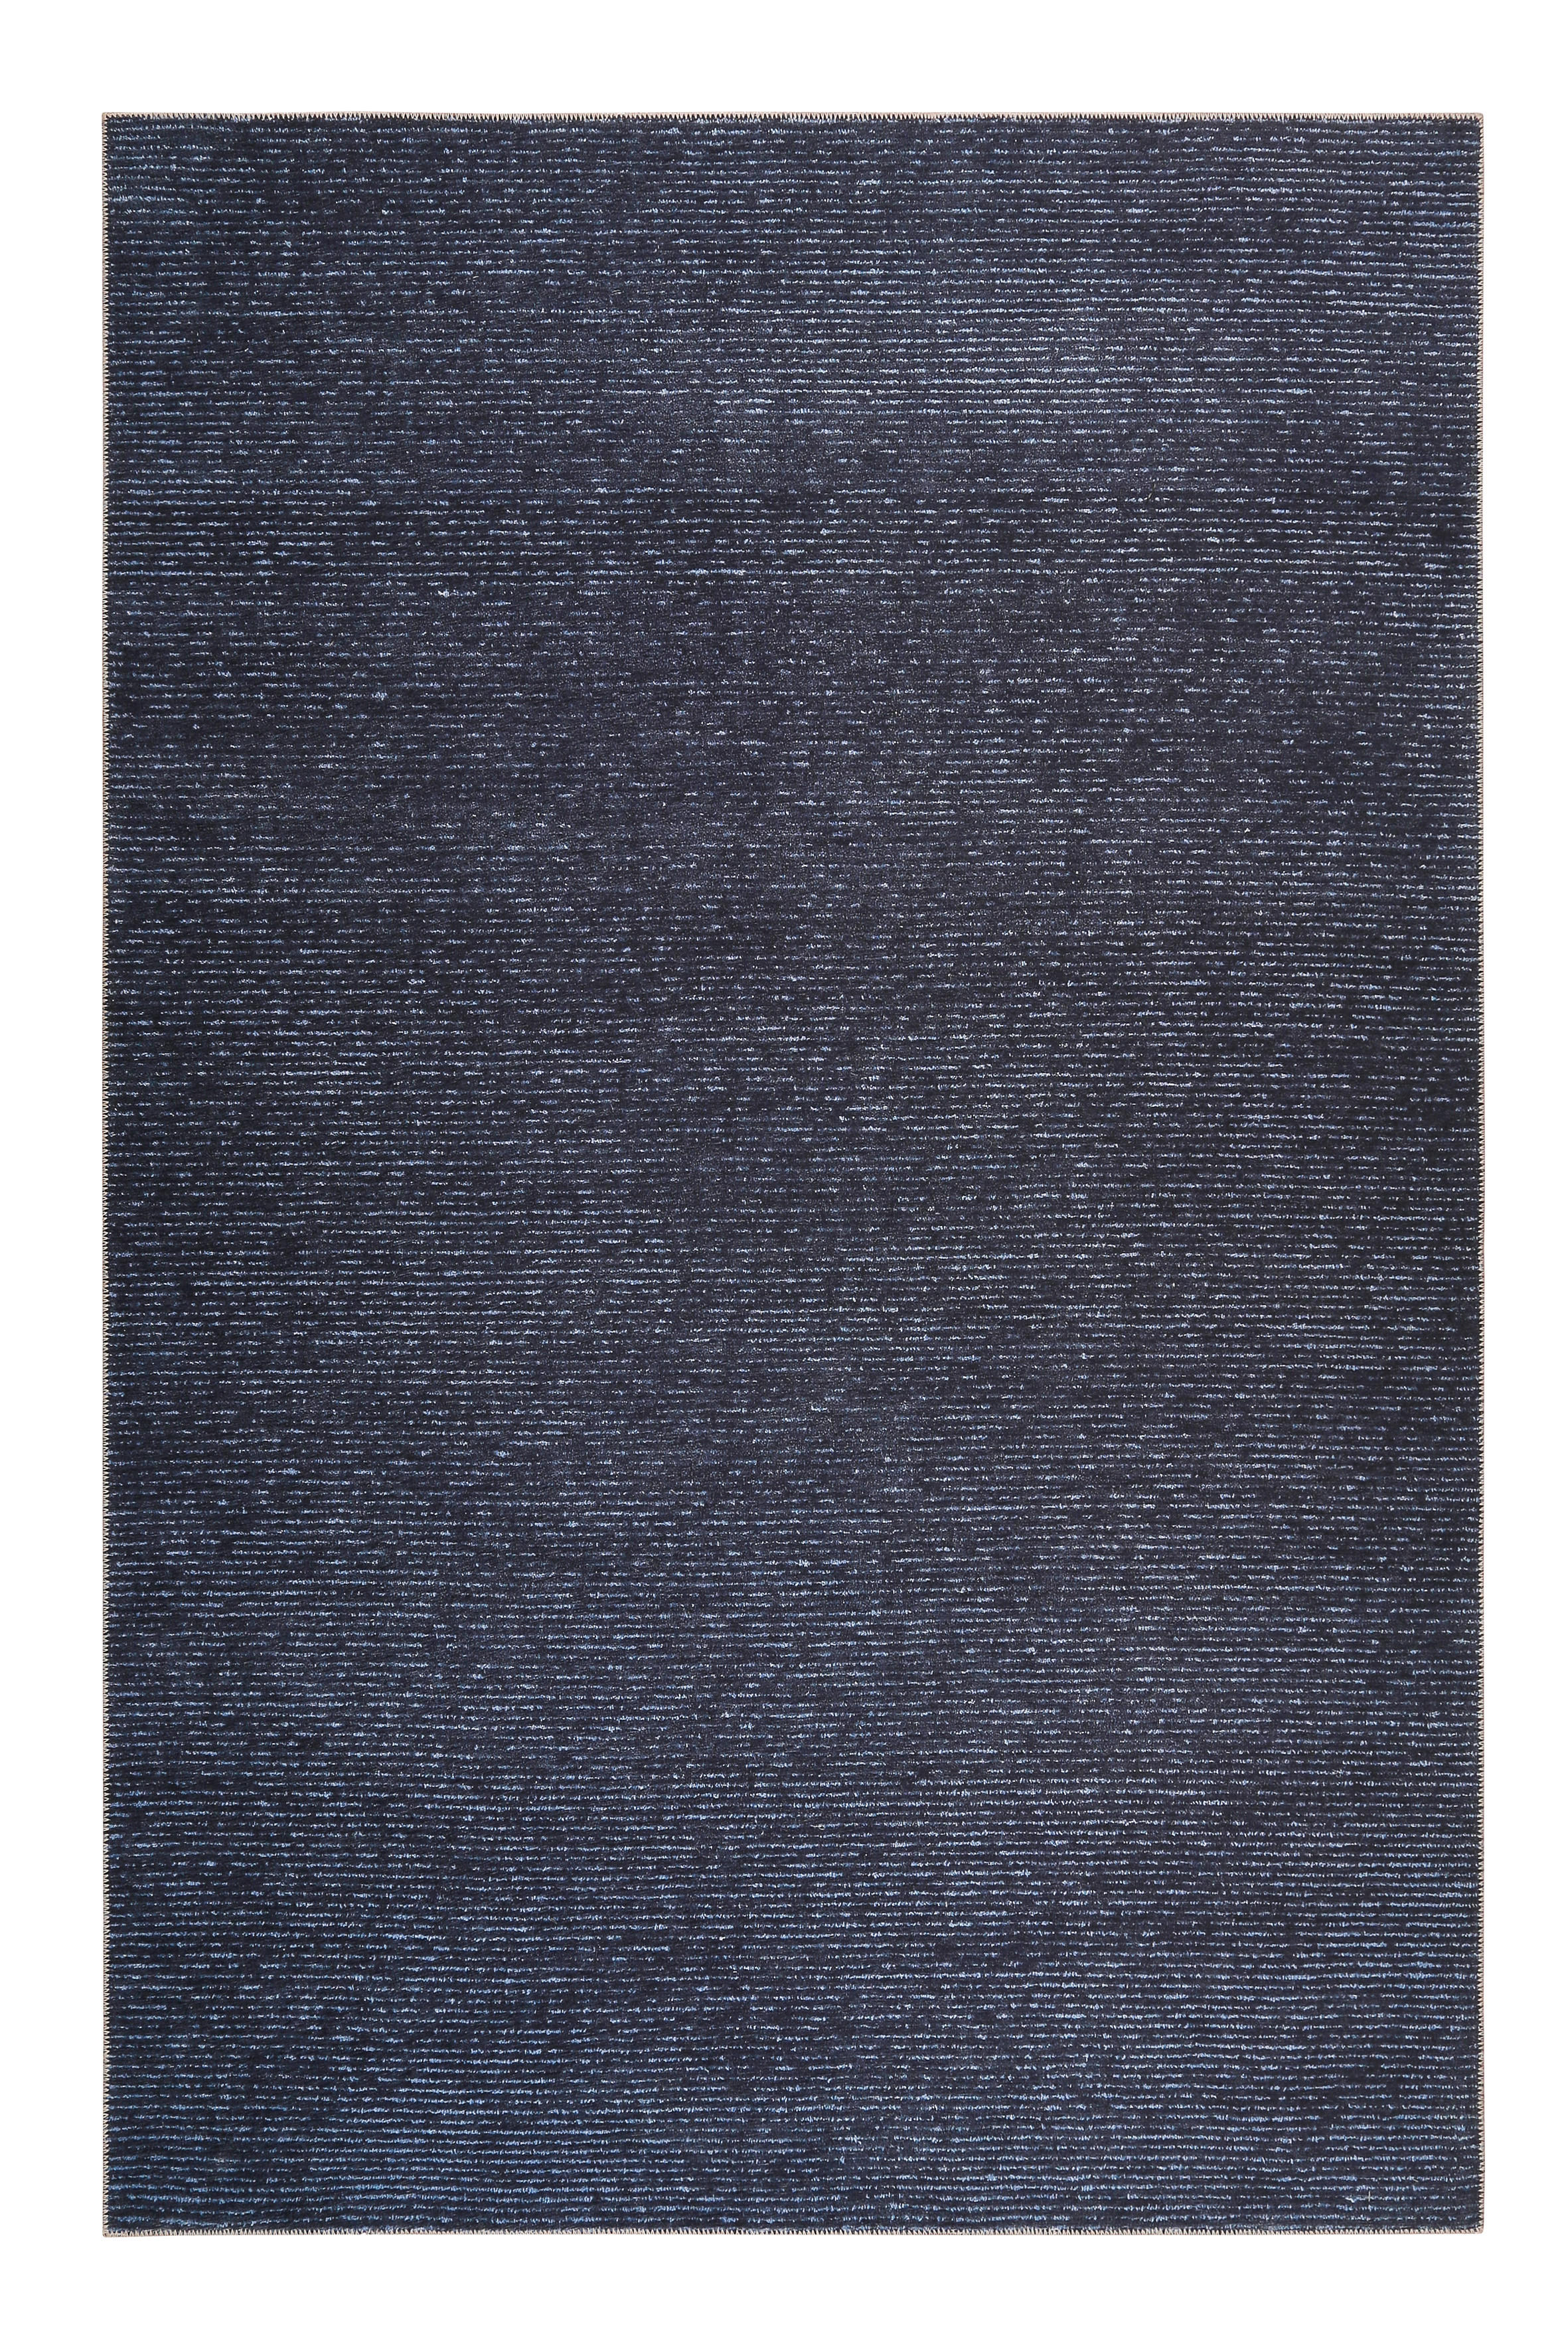 FLACHWEBETEPPICH 80/150 cm Marly  - Dunkelblau, KONVENTIONELL, Textil (80/150cm) - Esprit